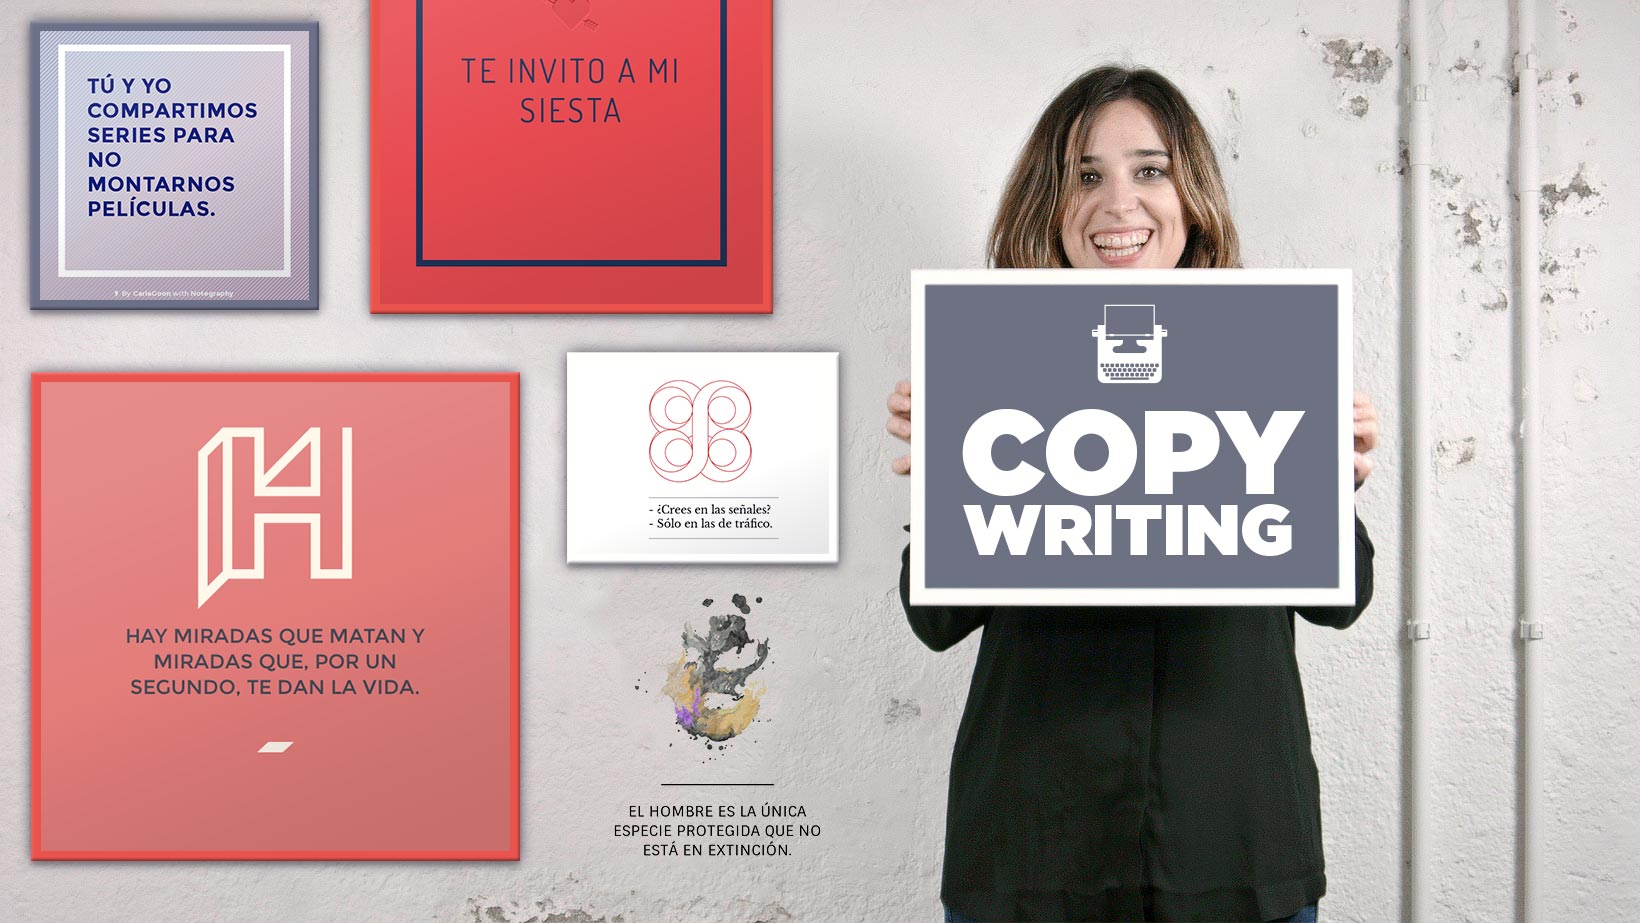 Copywriting: Definiere den Ton deiner persönlichen Marke